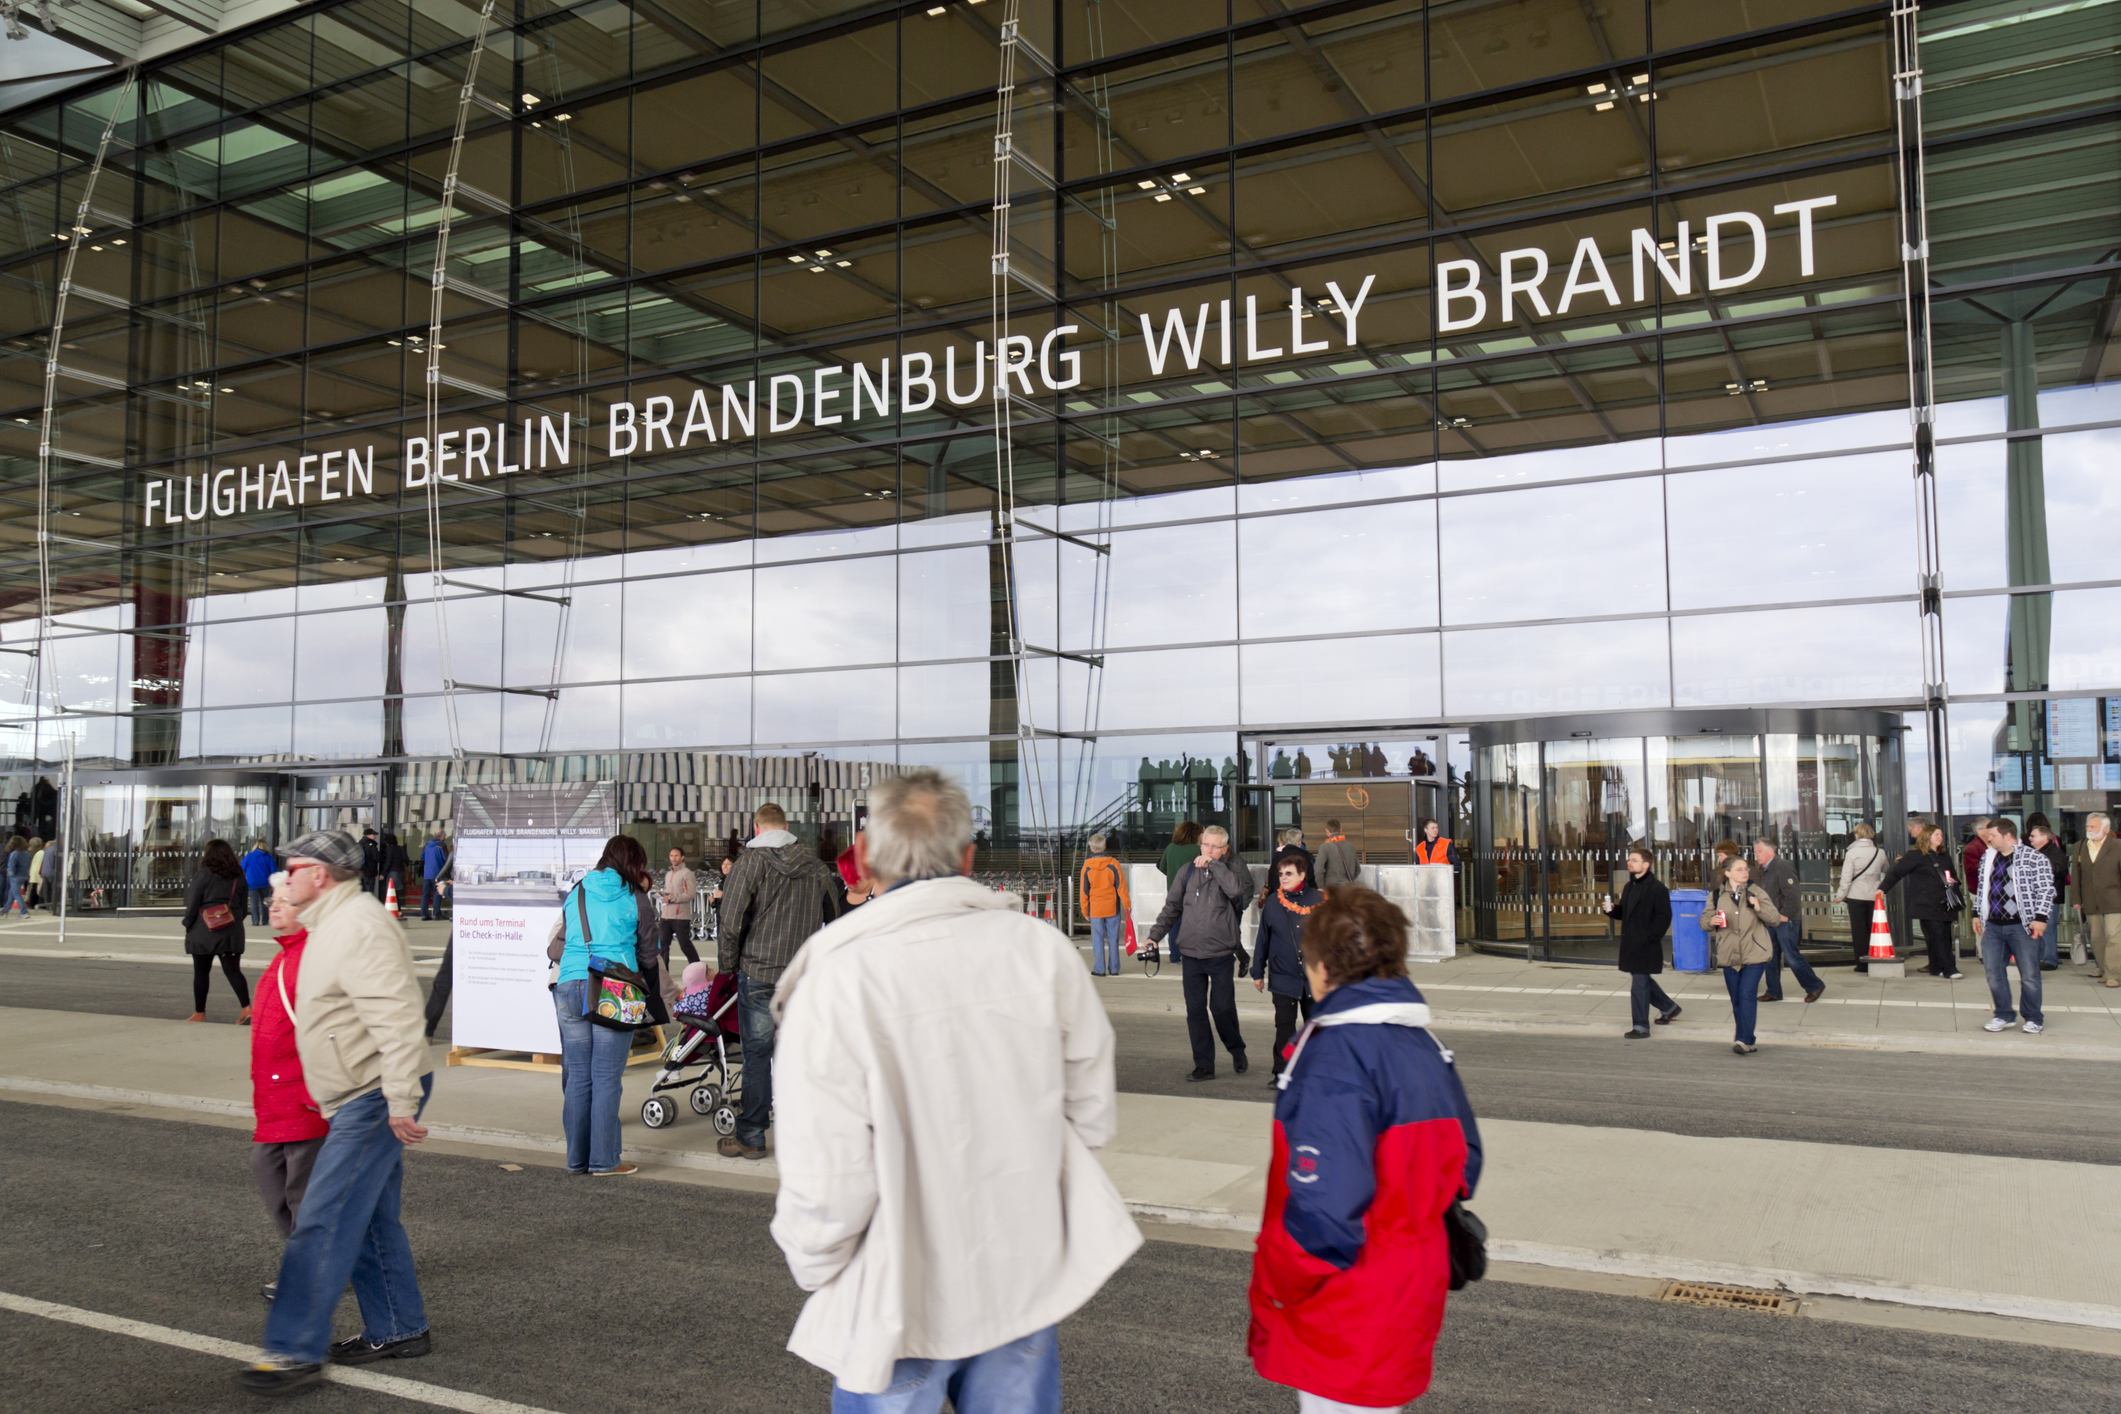 De hoofdingang van Berlin Brandenburg Willy Brandt Airport met veel mensen op de voorgrond.